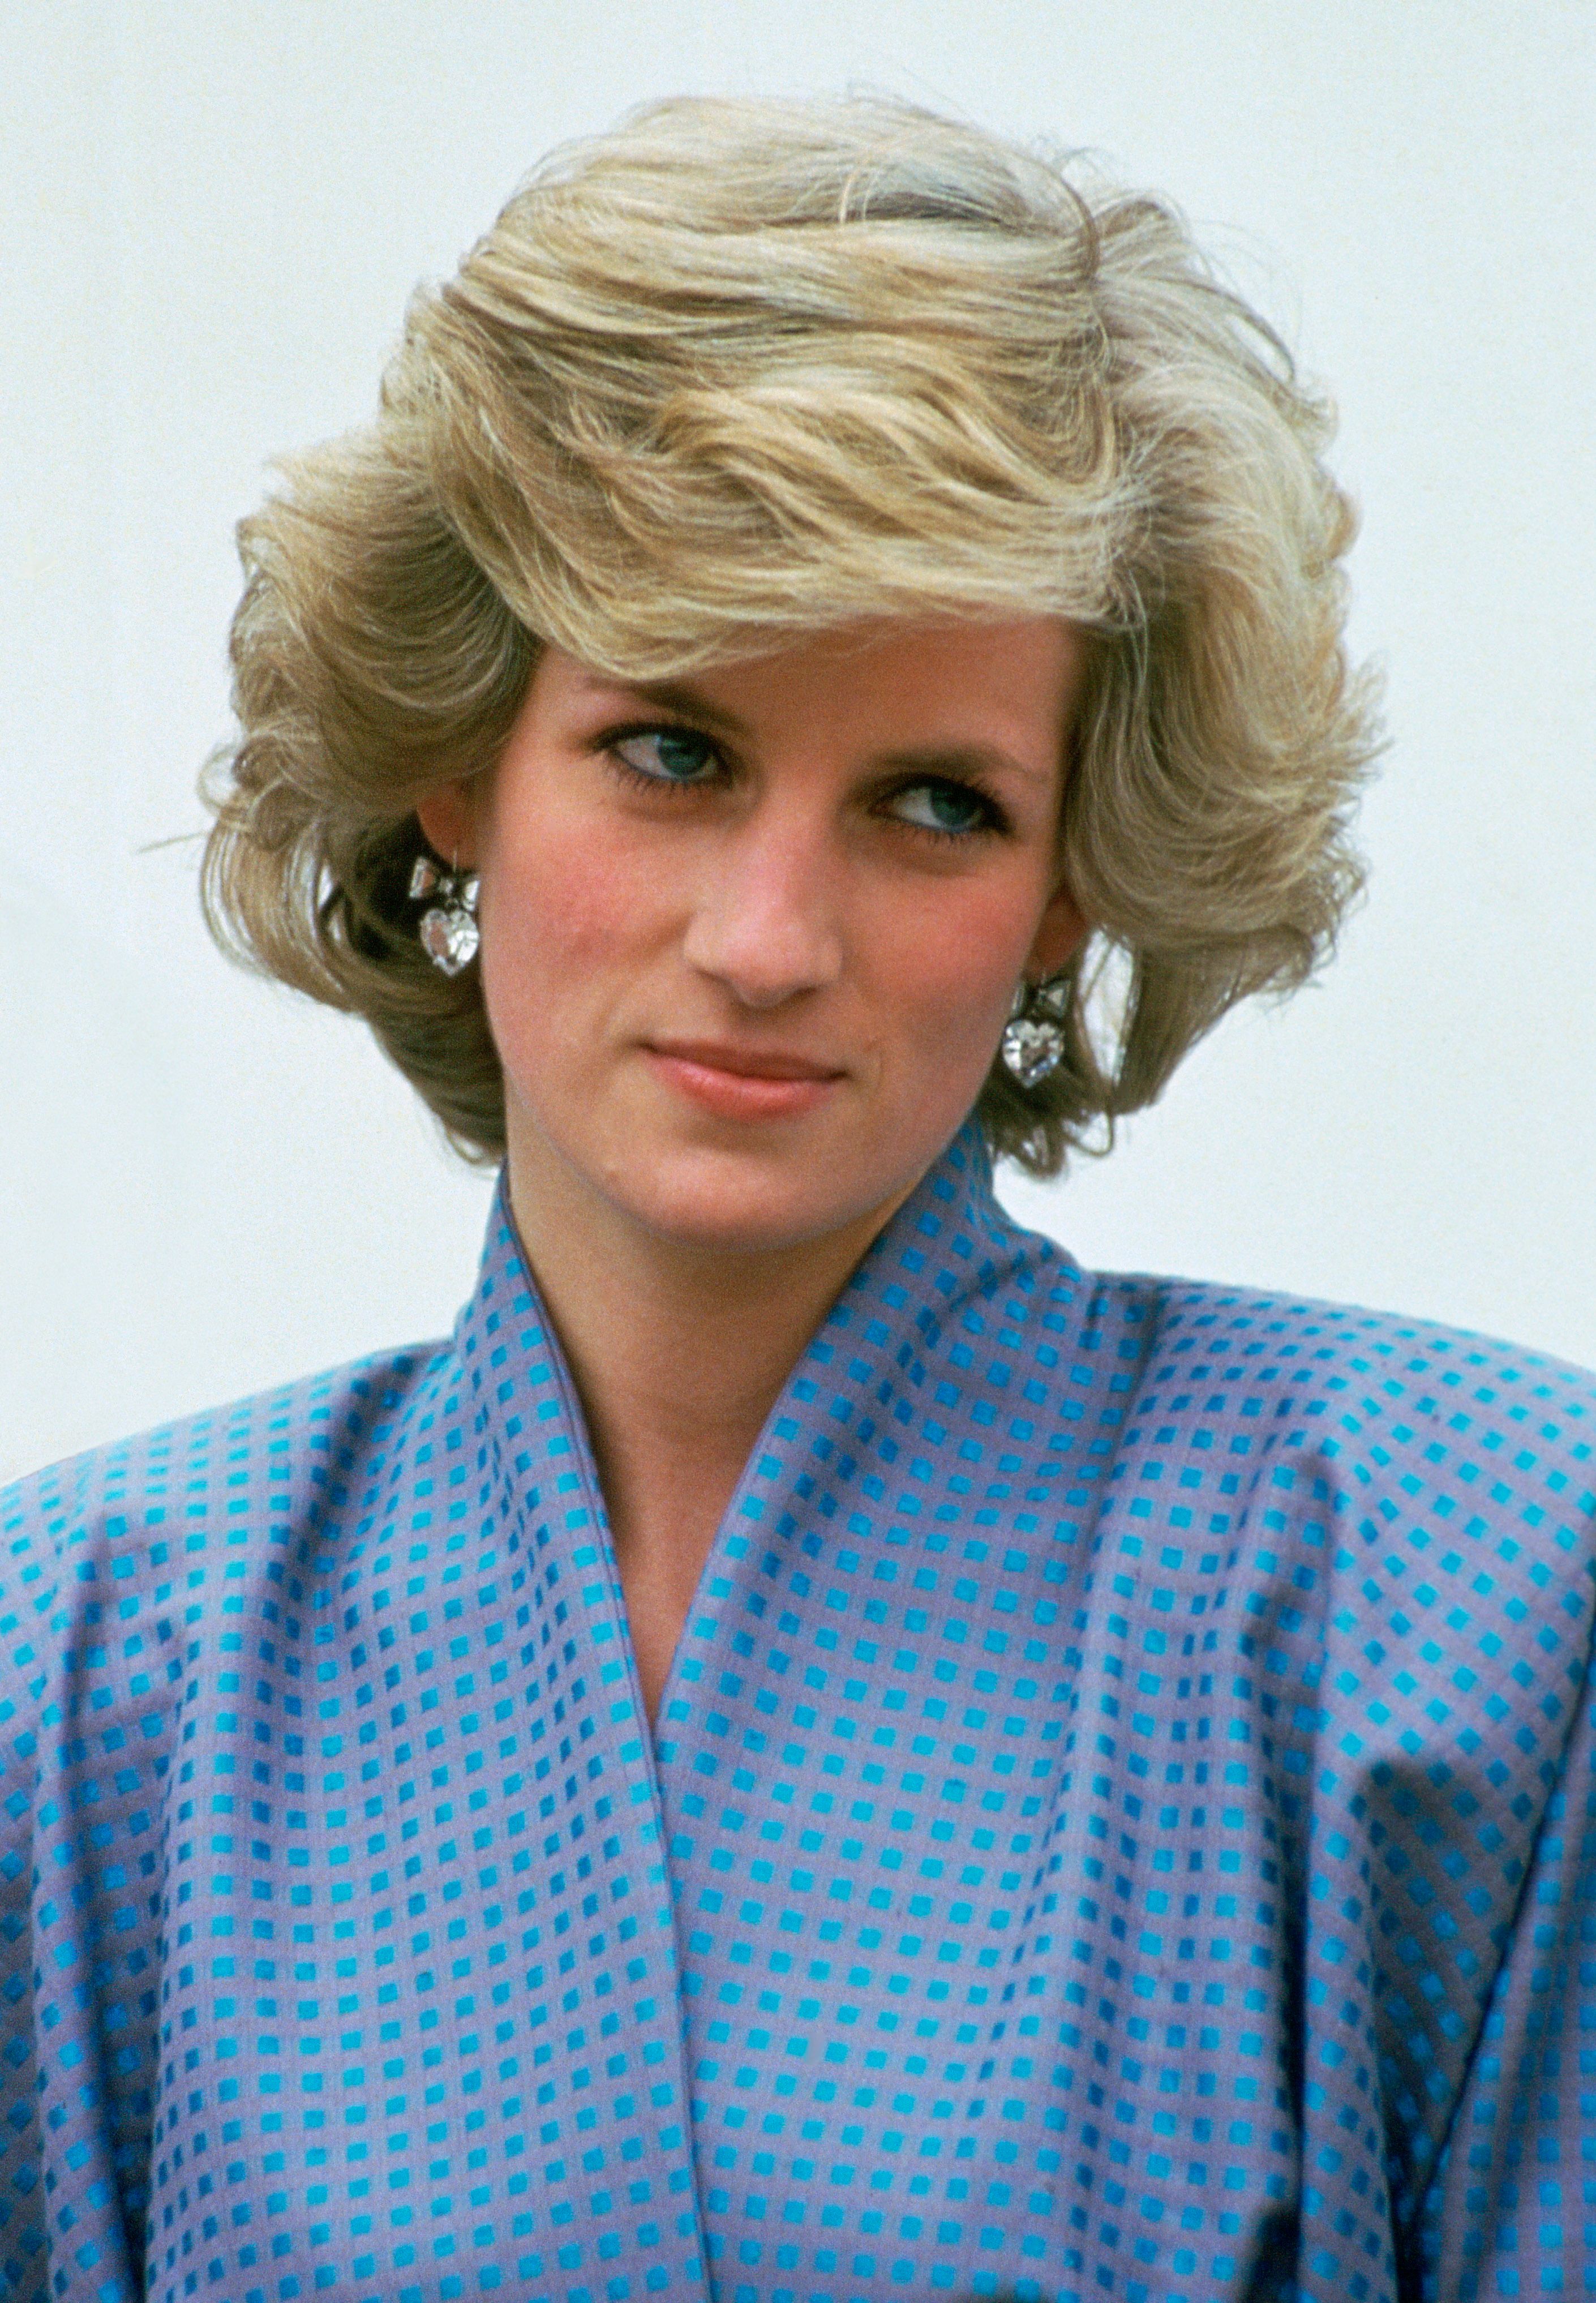 La princesse Diana en visite officielle à l'étranger en Italie le 22 avril 1985 |  Source : Getty Images